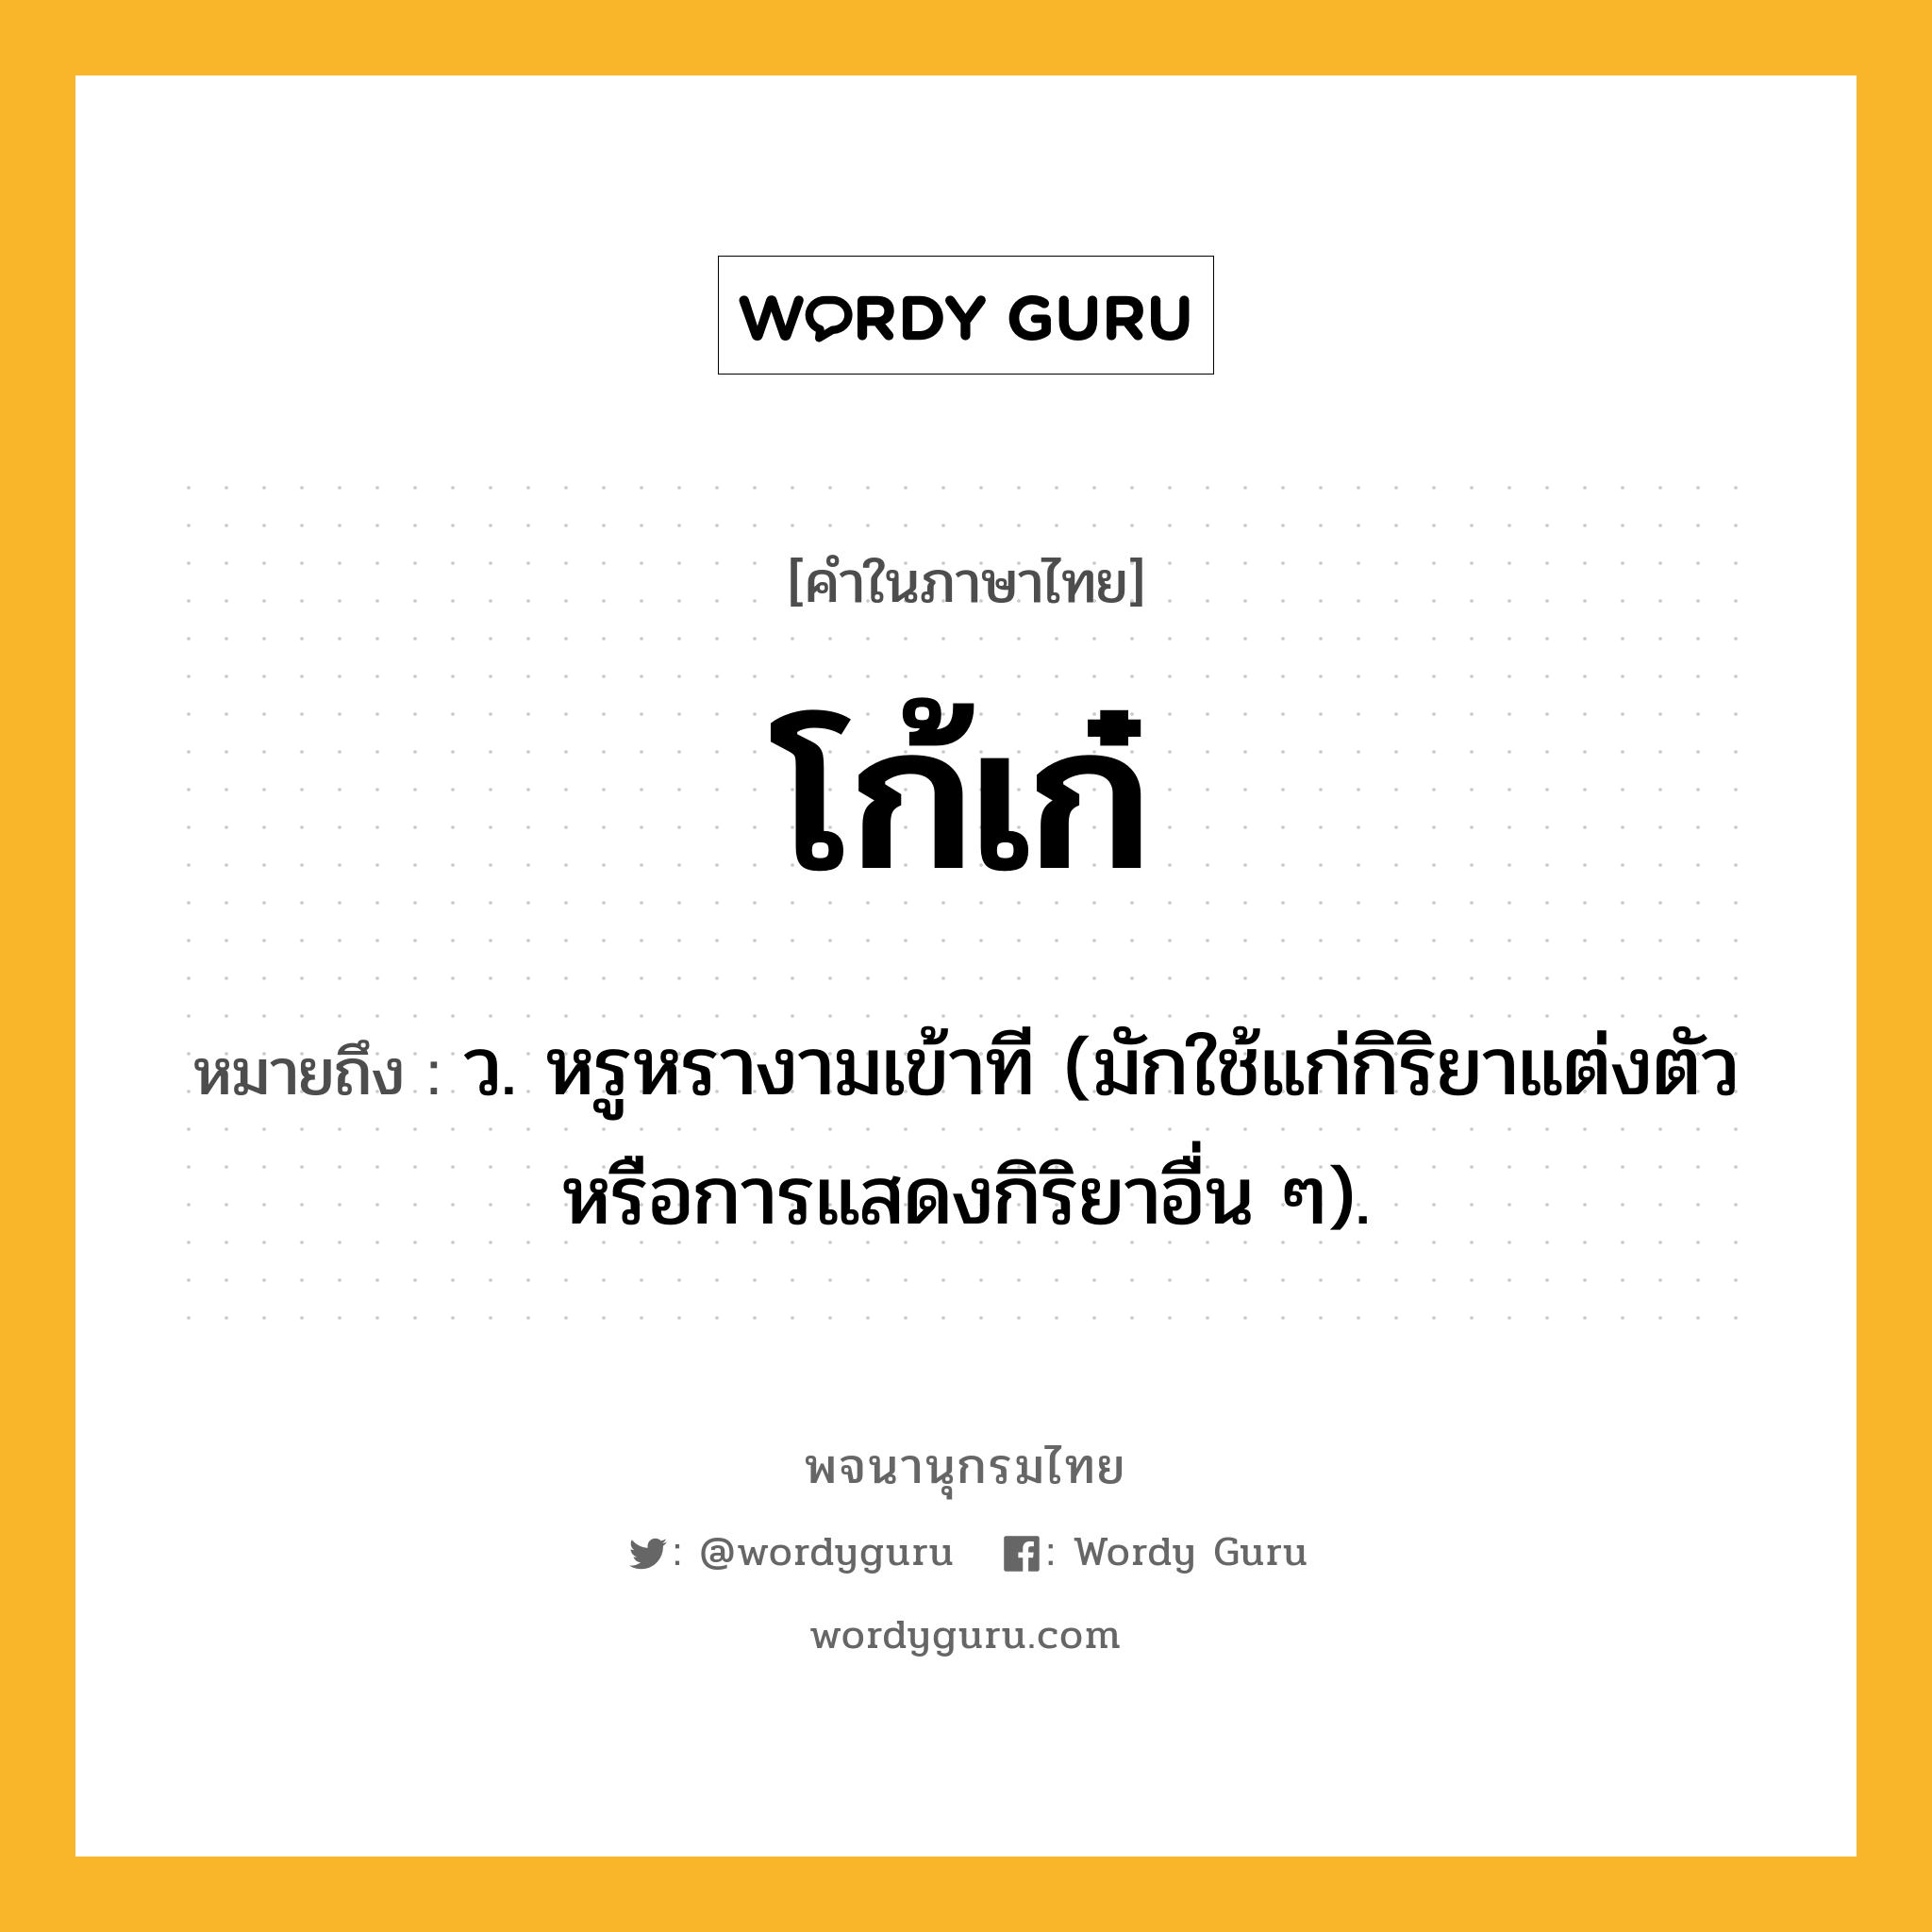 โก้เก๋ ความหมาย หมายถึงอะไร?, คำในภาษาไทย โก้เก๋ หมายถึง ว. หรูหรางามเข้าที (มักใช้แก่กิริยาแต่งตัวหรือการแสดงกิริยาอื่น ๆ).